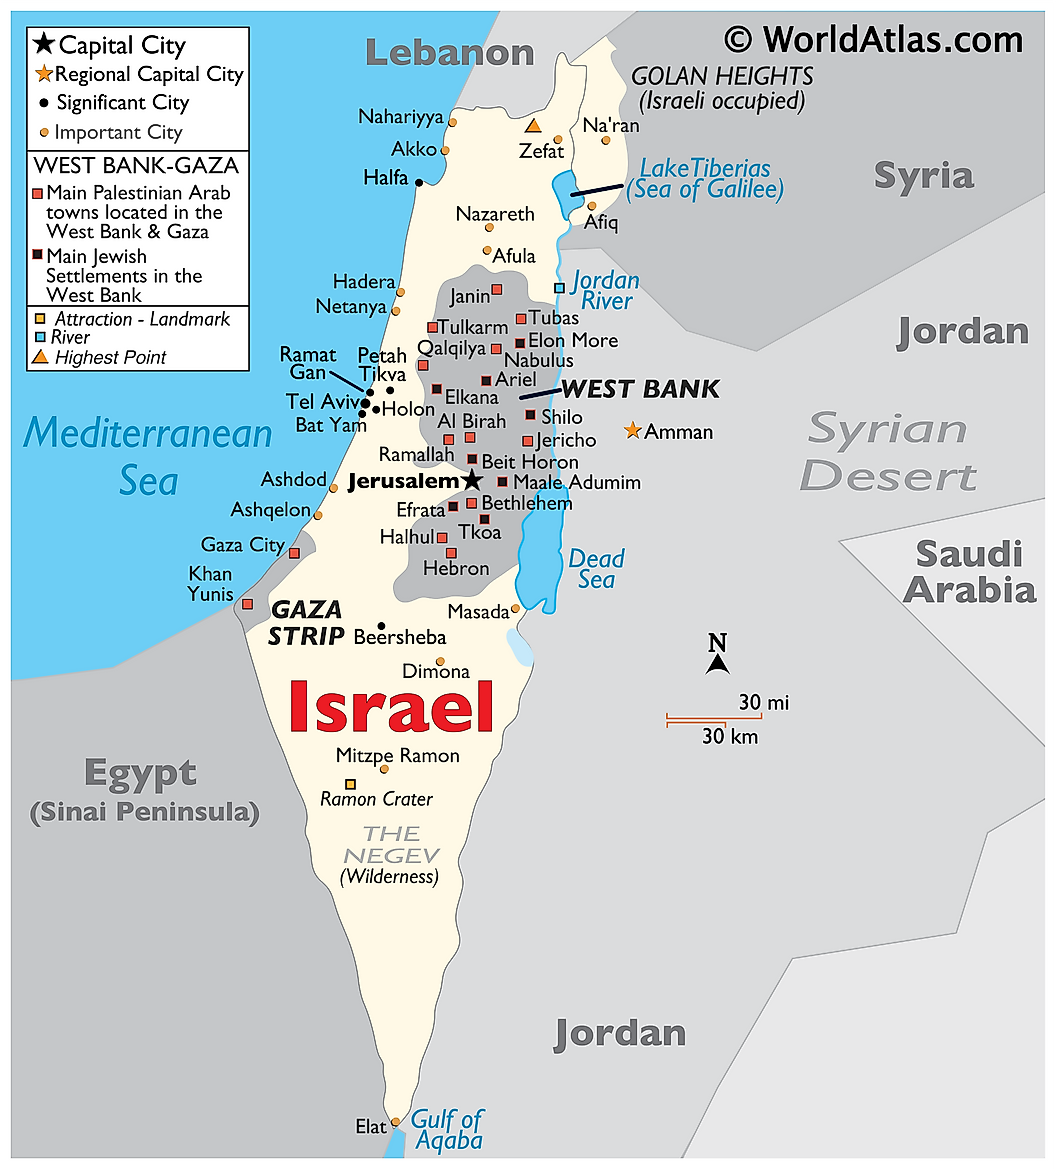 Bản đồ hành chính của Israel gồm 6 khu vực và 74 quận, tất cả đều có sự phát triển vượt bậc về kinh tế và văn hóa. Mỗi khu vực có nét đẹp riêng và đặc trưng. Hãy xem hình ảnh bản đồ hành chính để hiểu rõ hơn về sự phát triển thần tốc của Israel.